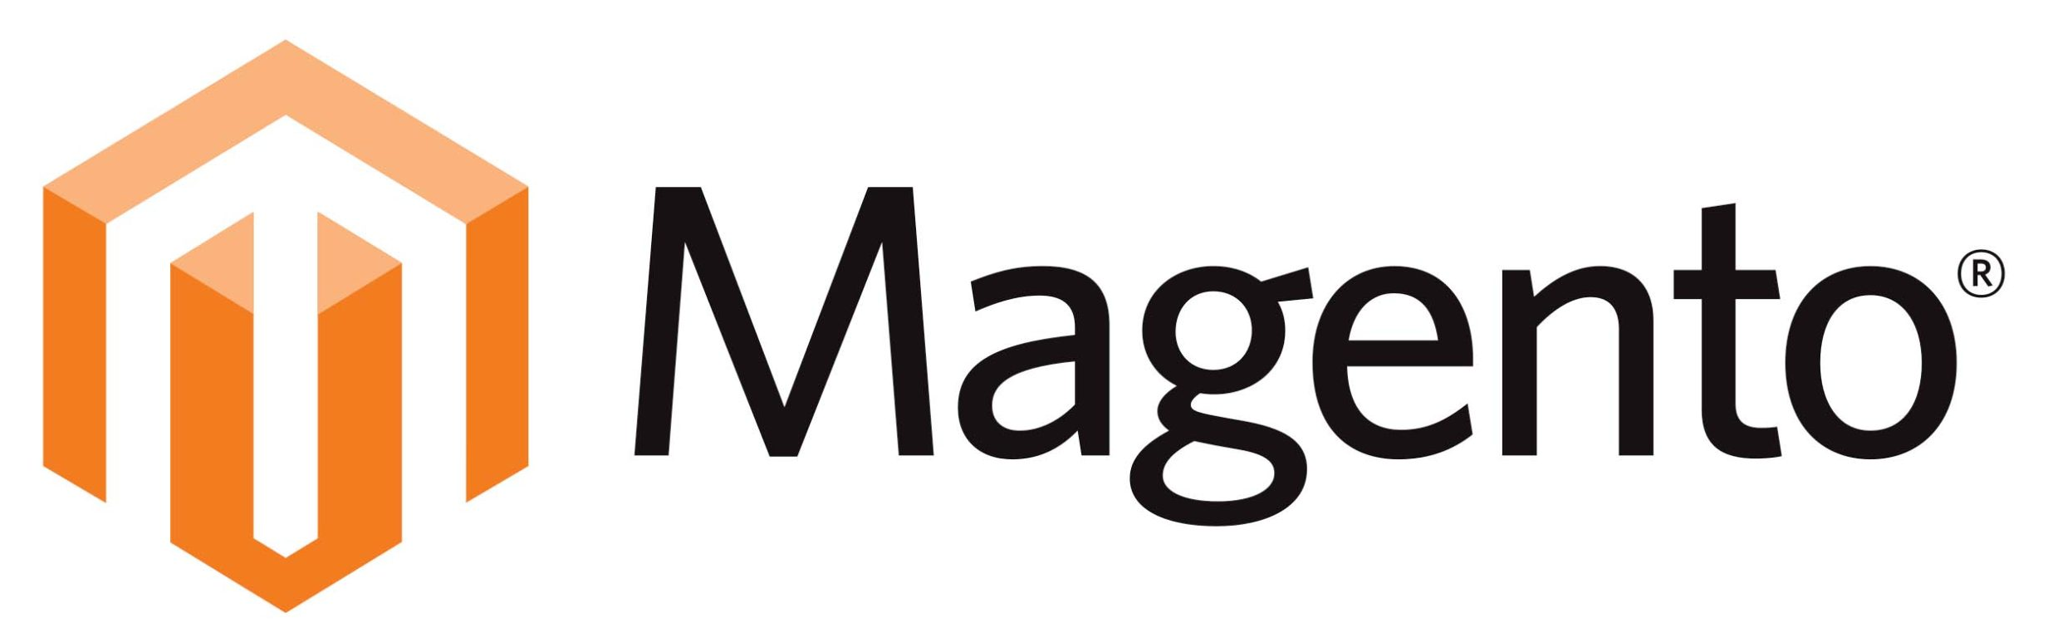 Magento logo2 1 scaled